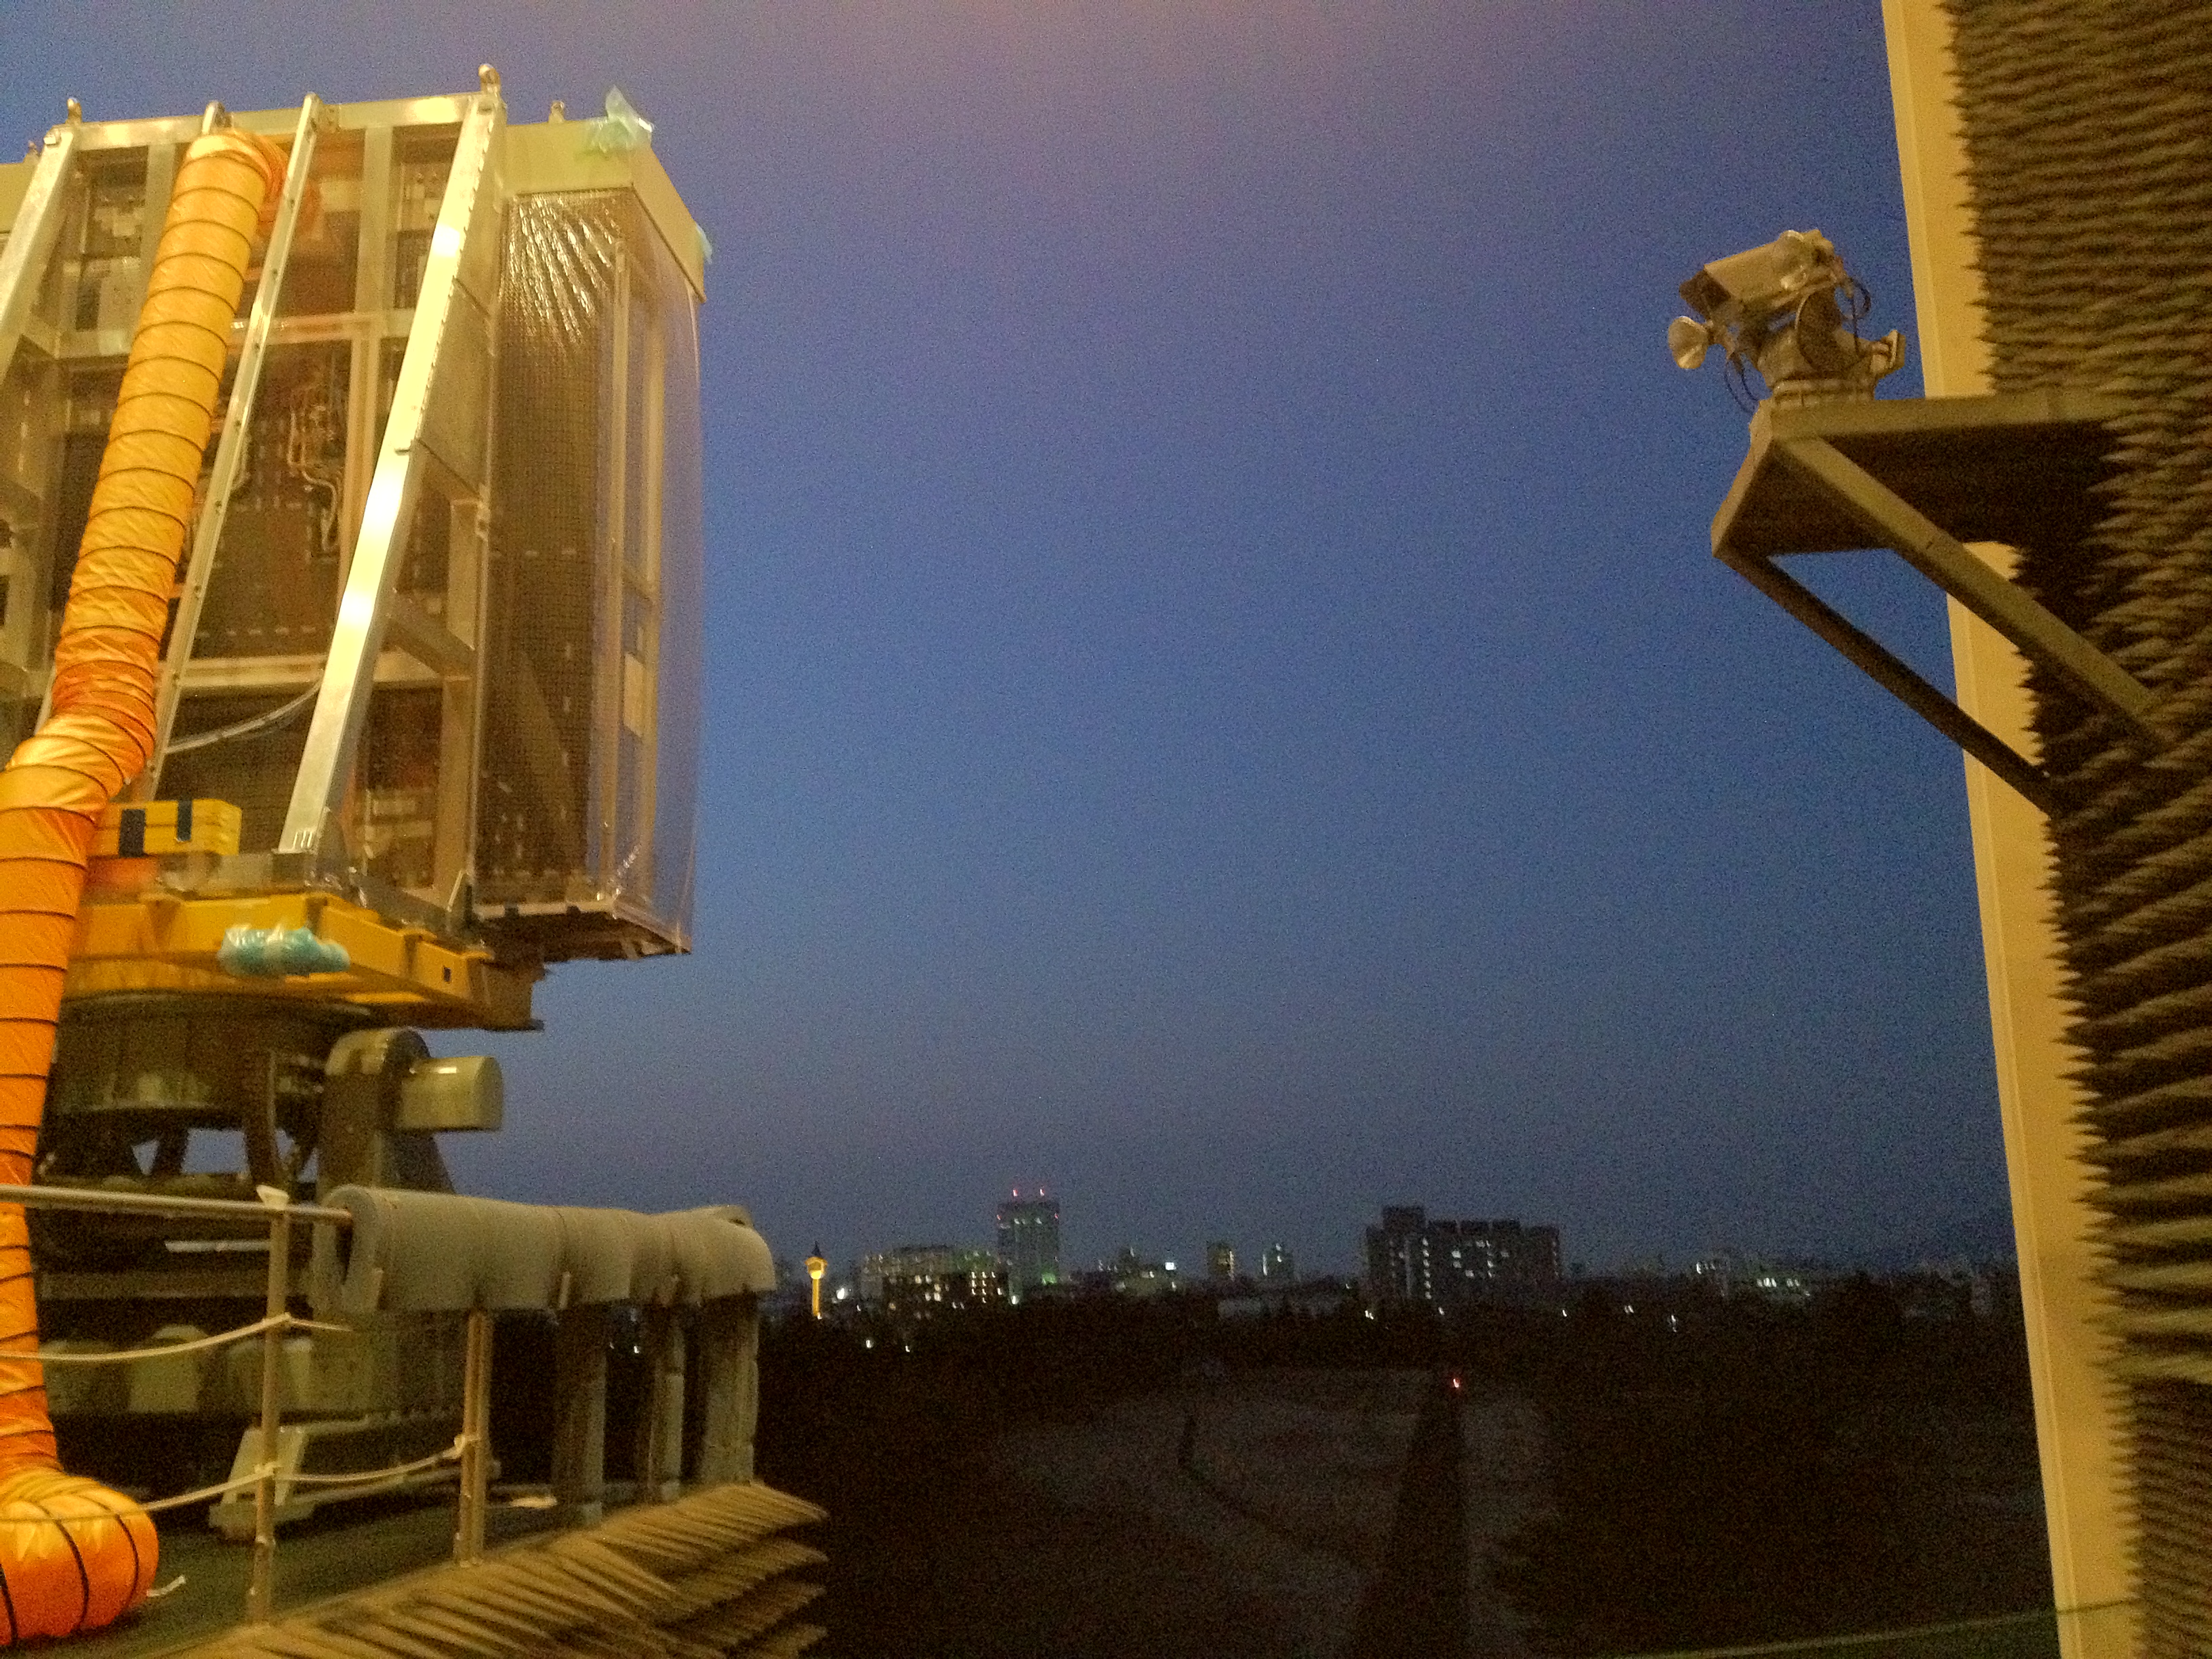 KuPR during Range Testing at Tsukuba Space Center, Japan